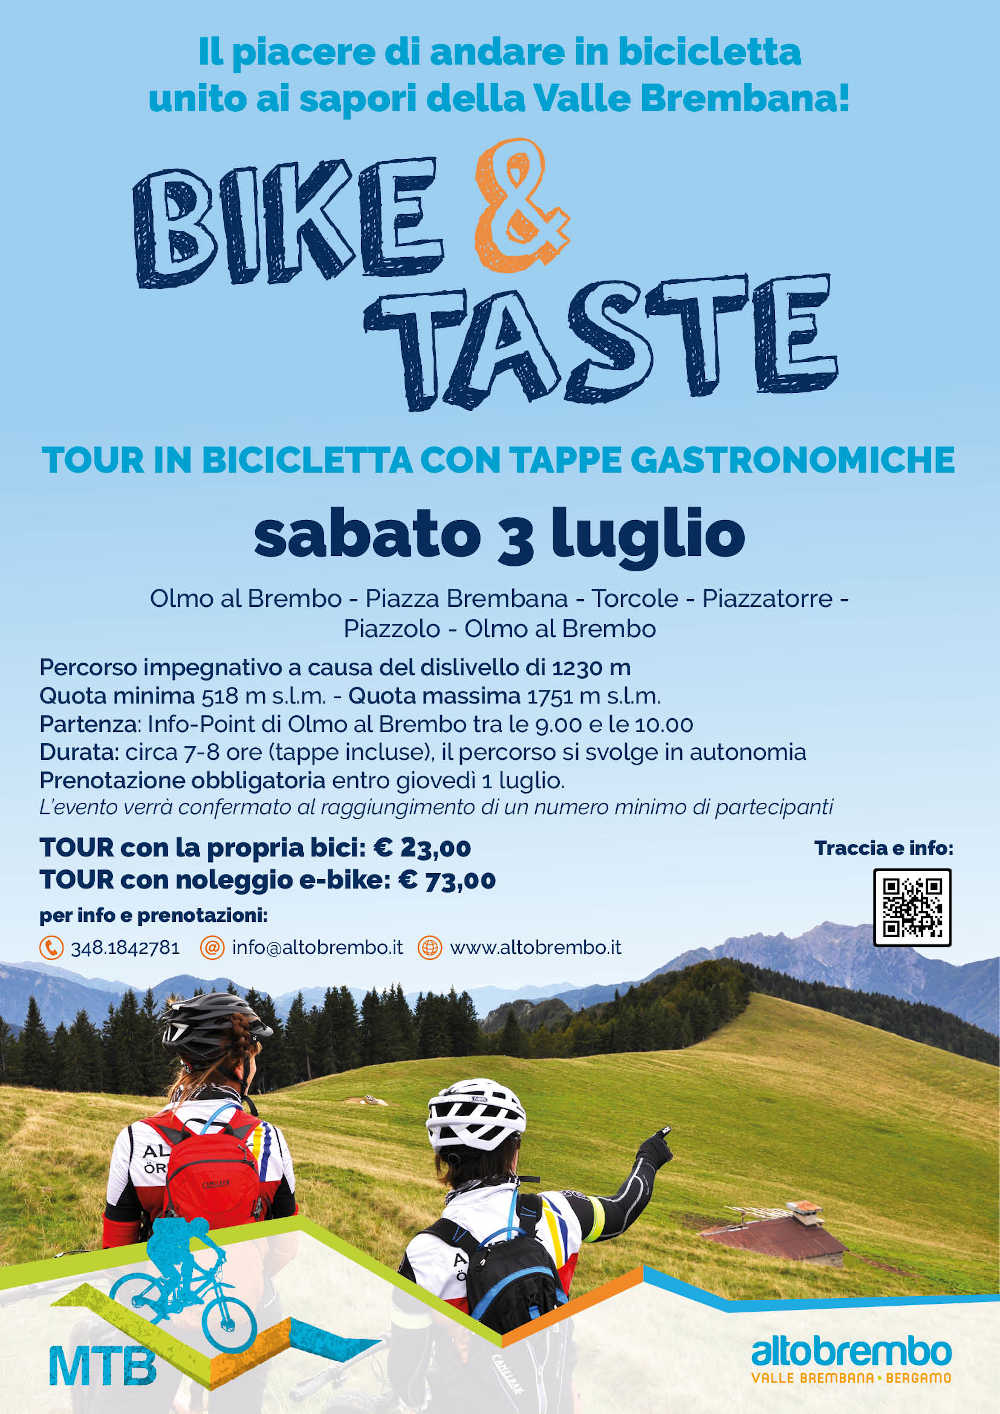 Bike & Taste in Valle Brembana: sabato 3 luglio